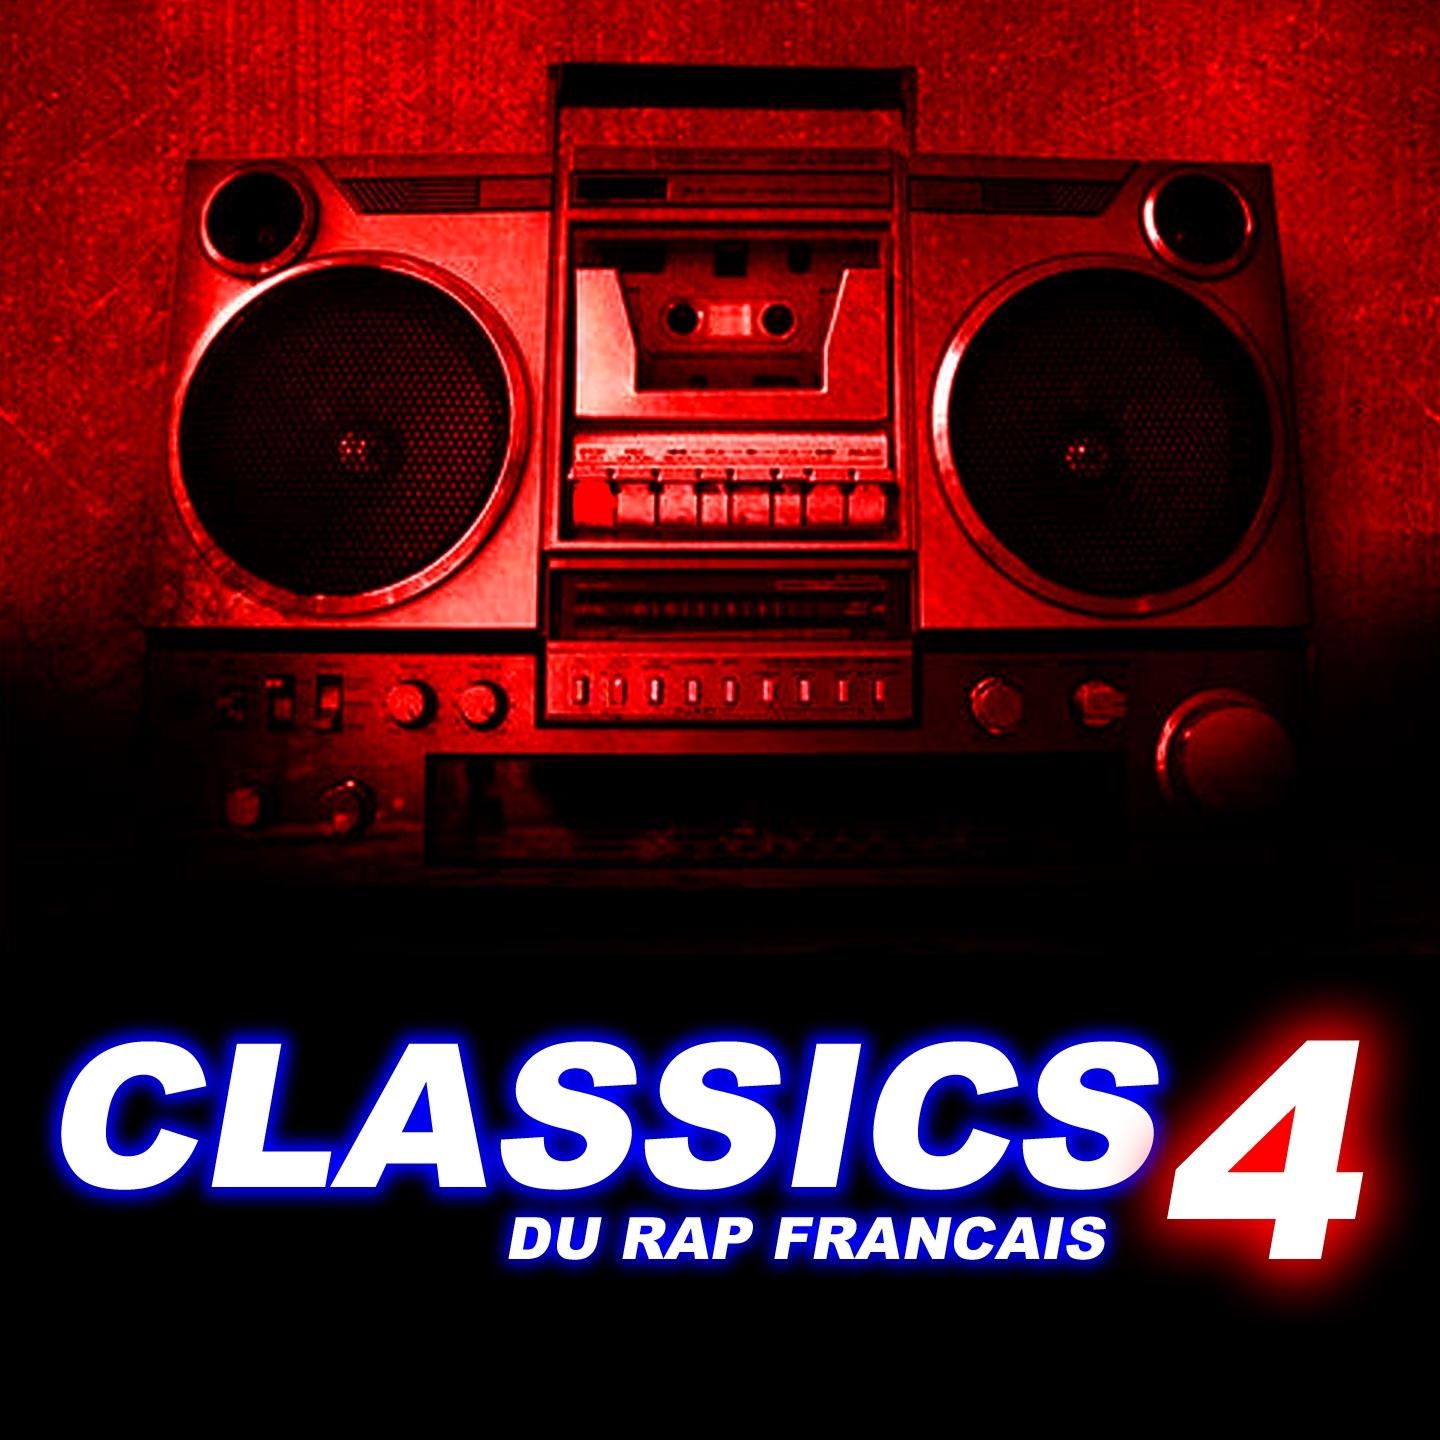 Classics du rap fran ais, vol. 4